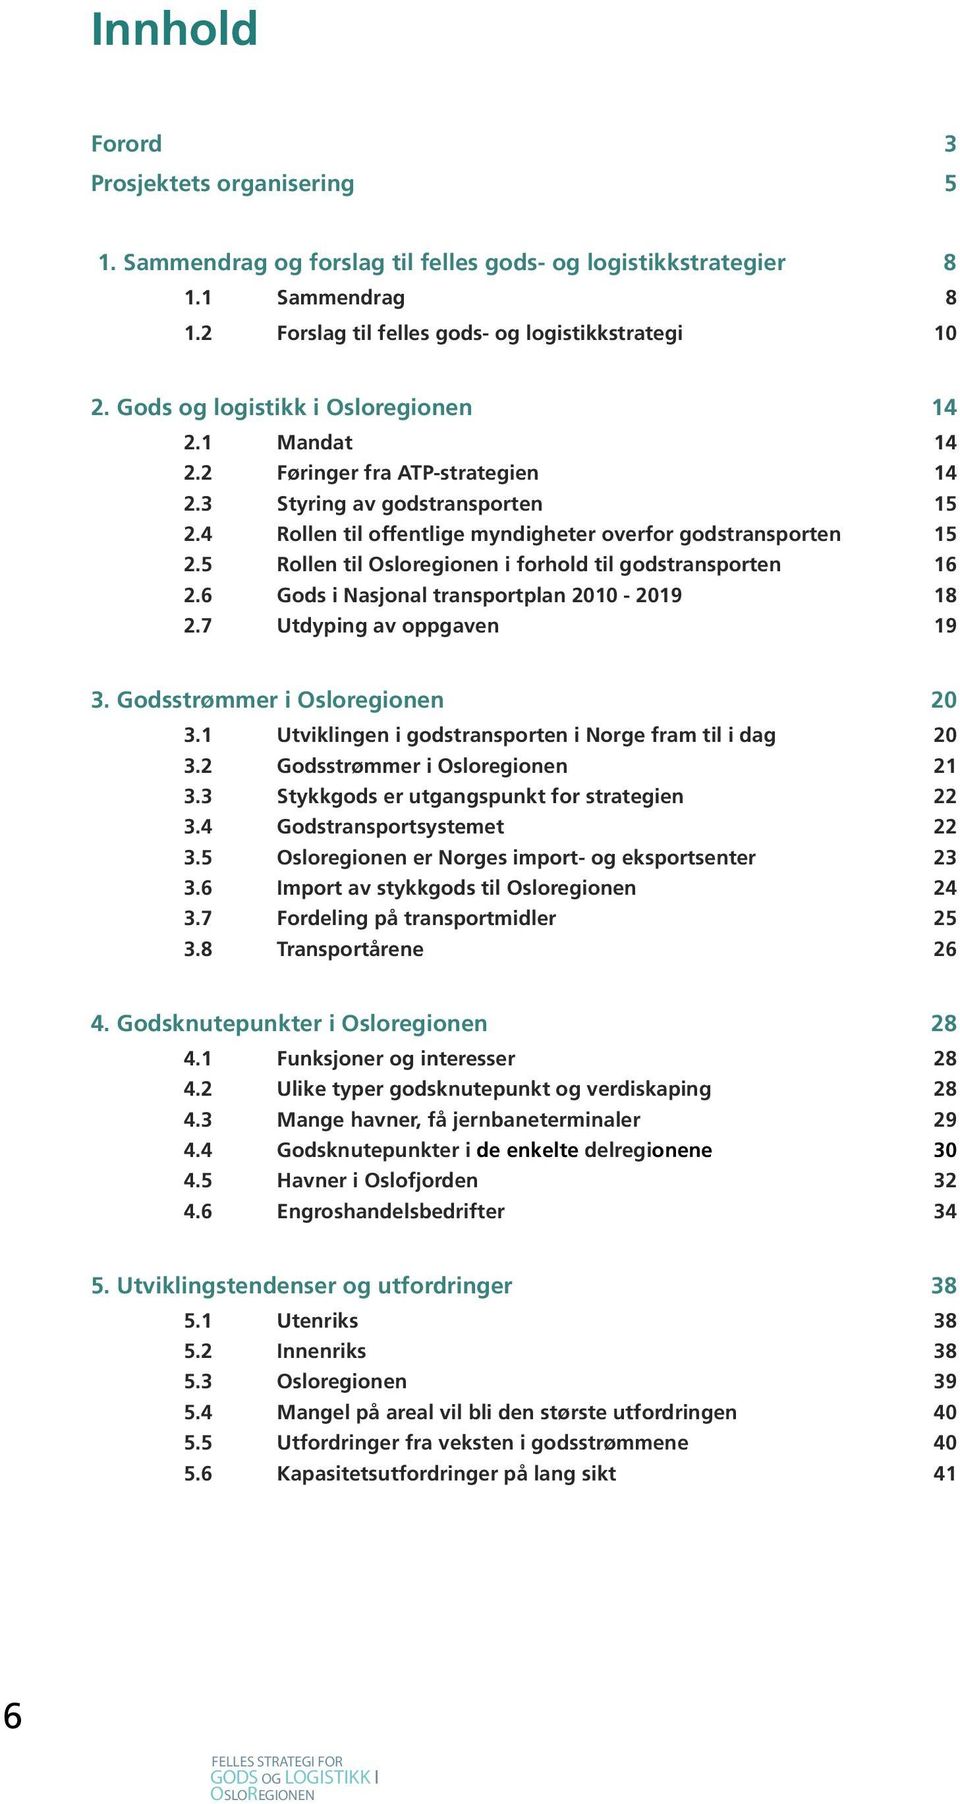 5 Rollen til Osloregionen i forhold til godstransporten 16 2.6 Gods i Nasjonal transportplan 2010-2019 18 2.7 Utdyping av oppgaven 19 3. Godsstrømmer i Osloregionen 20 3.